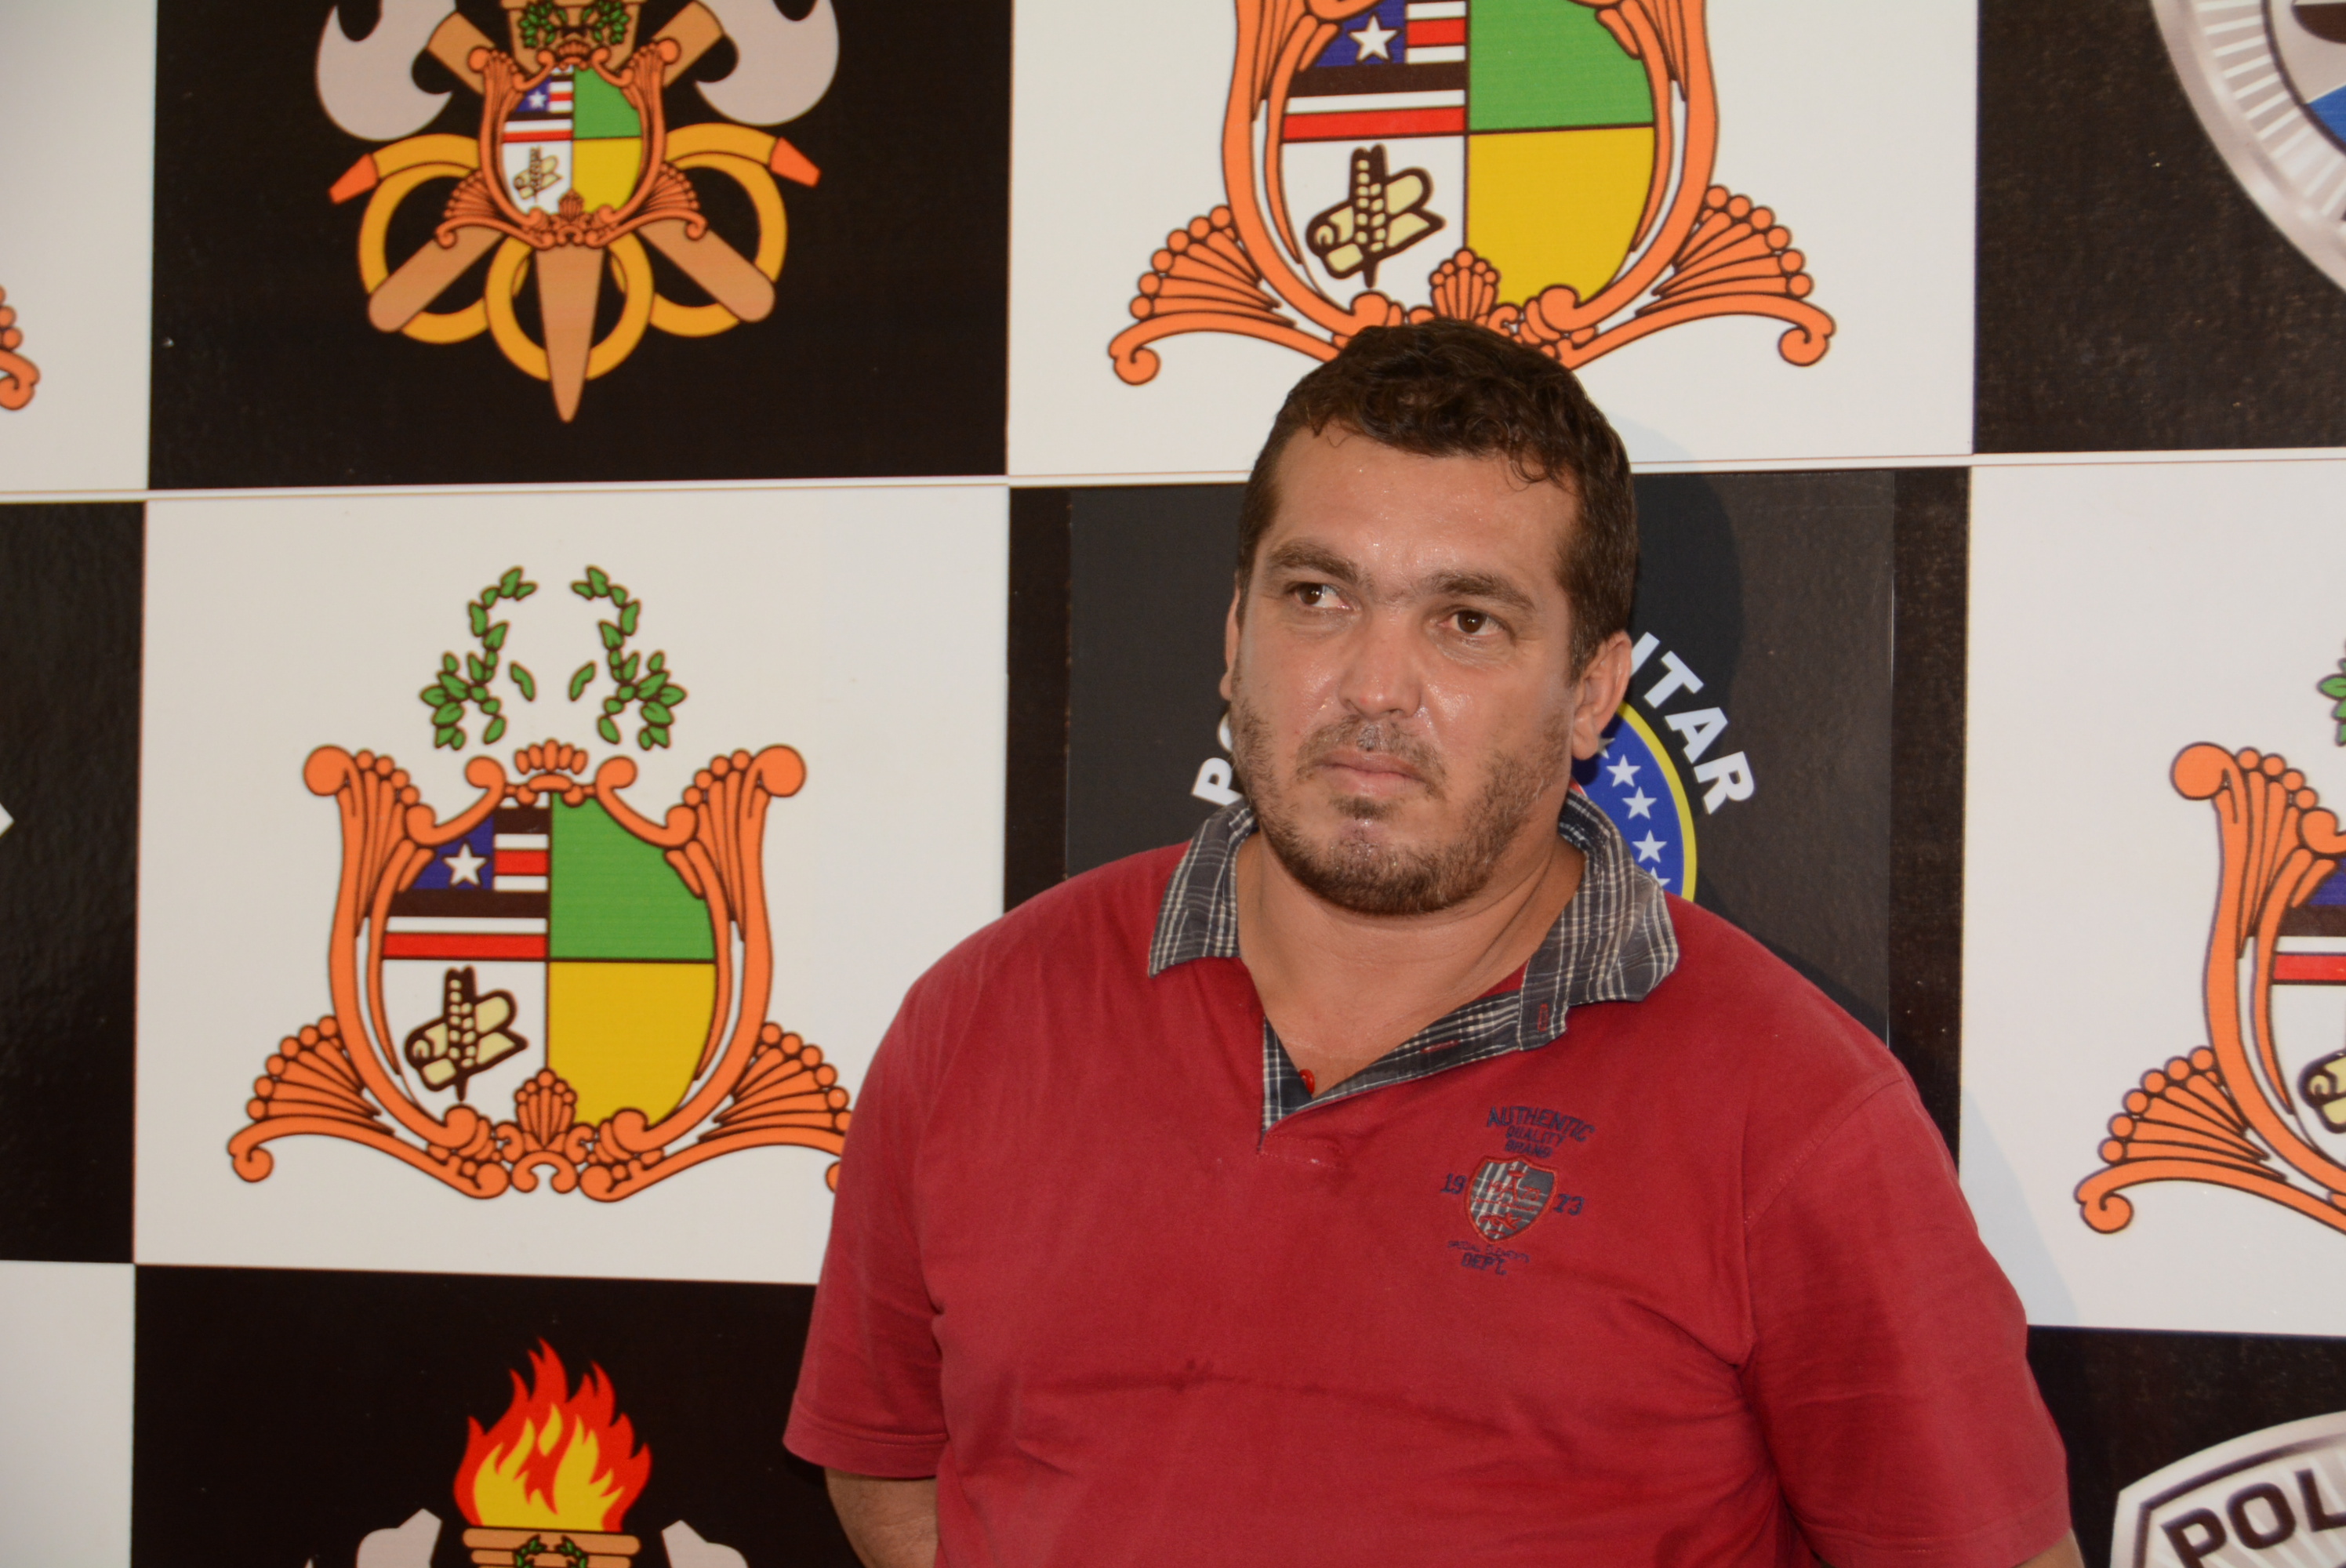  Jack Douglas Vieira Matos, o "Baiano" a pena de 25 anos em regime fechado.